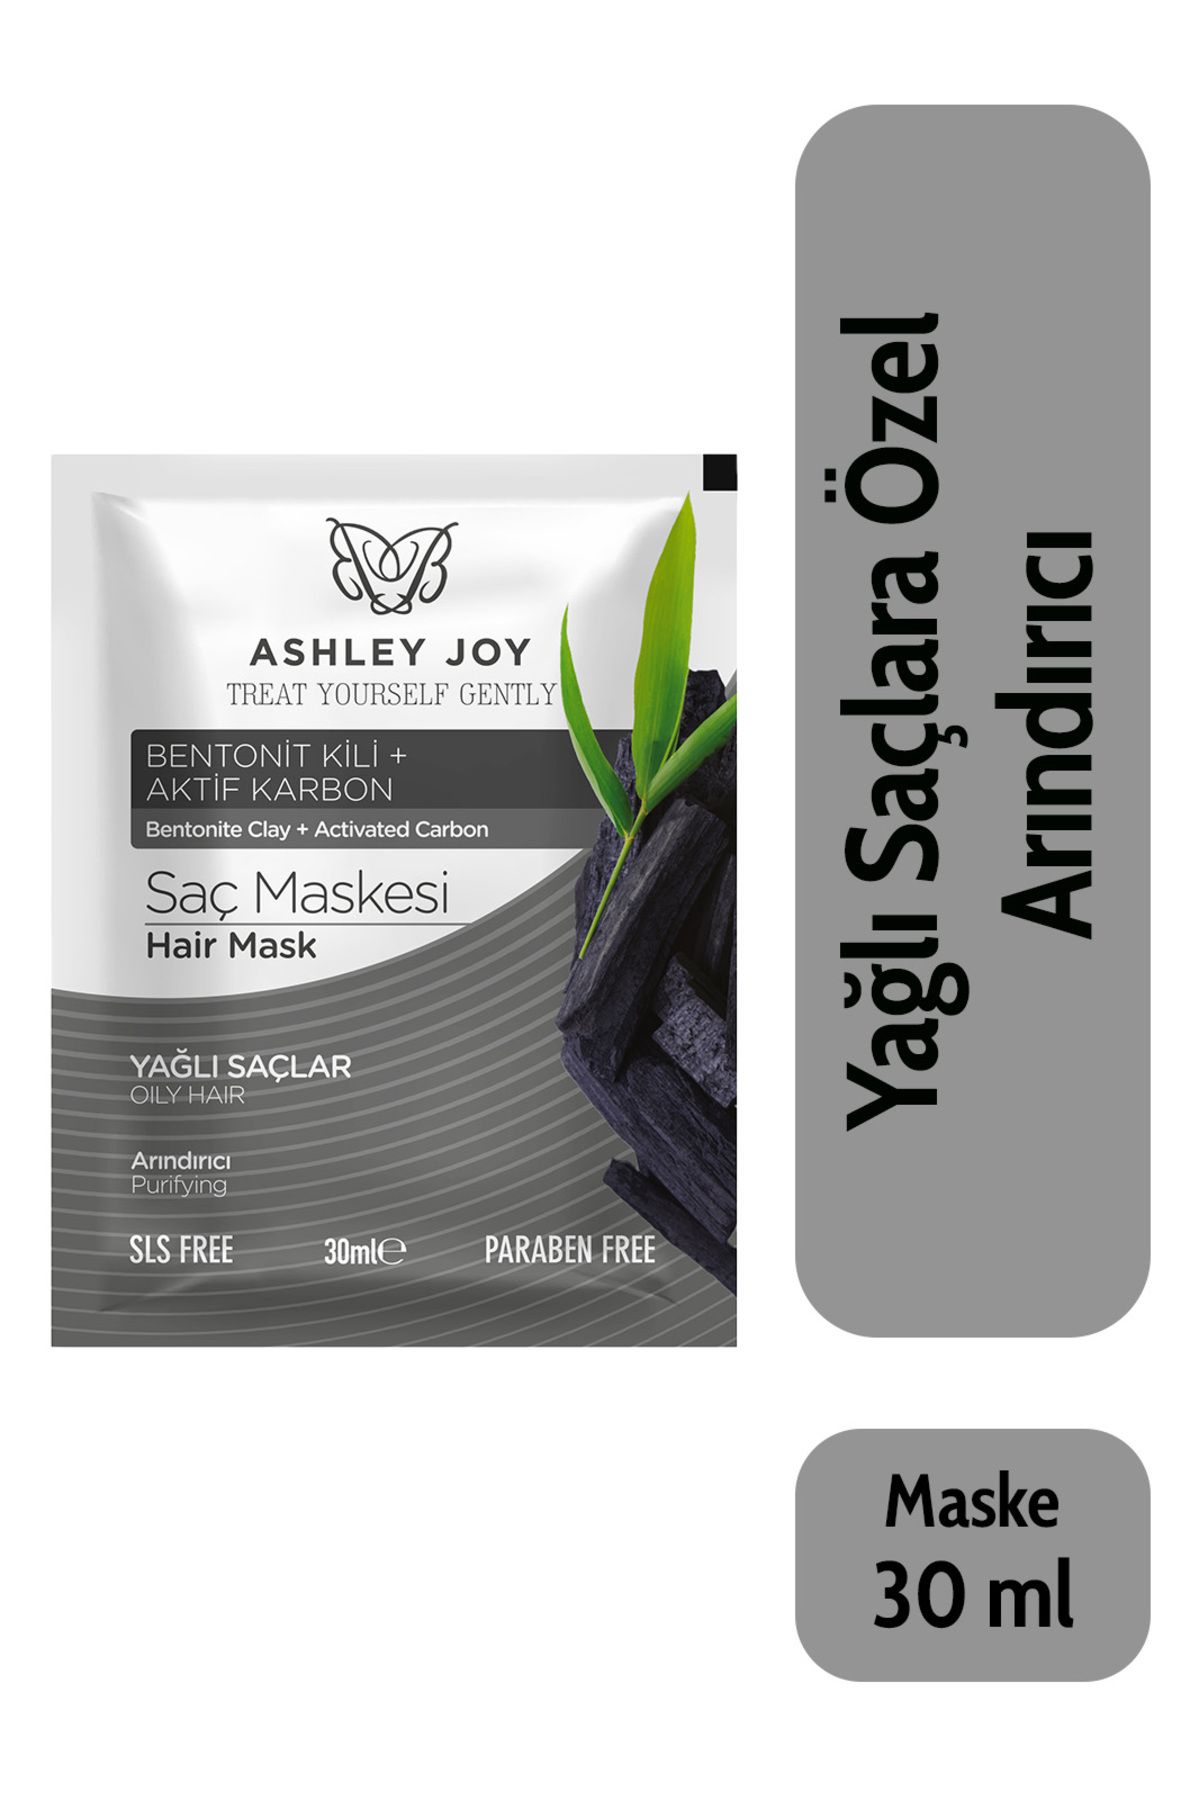 Ashley Joy Yağlı Saçlar Için Bentonit Kili, Aktif Karbon Içeren Arındırıcı Saç Maskesi 30 ml